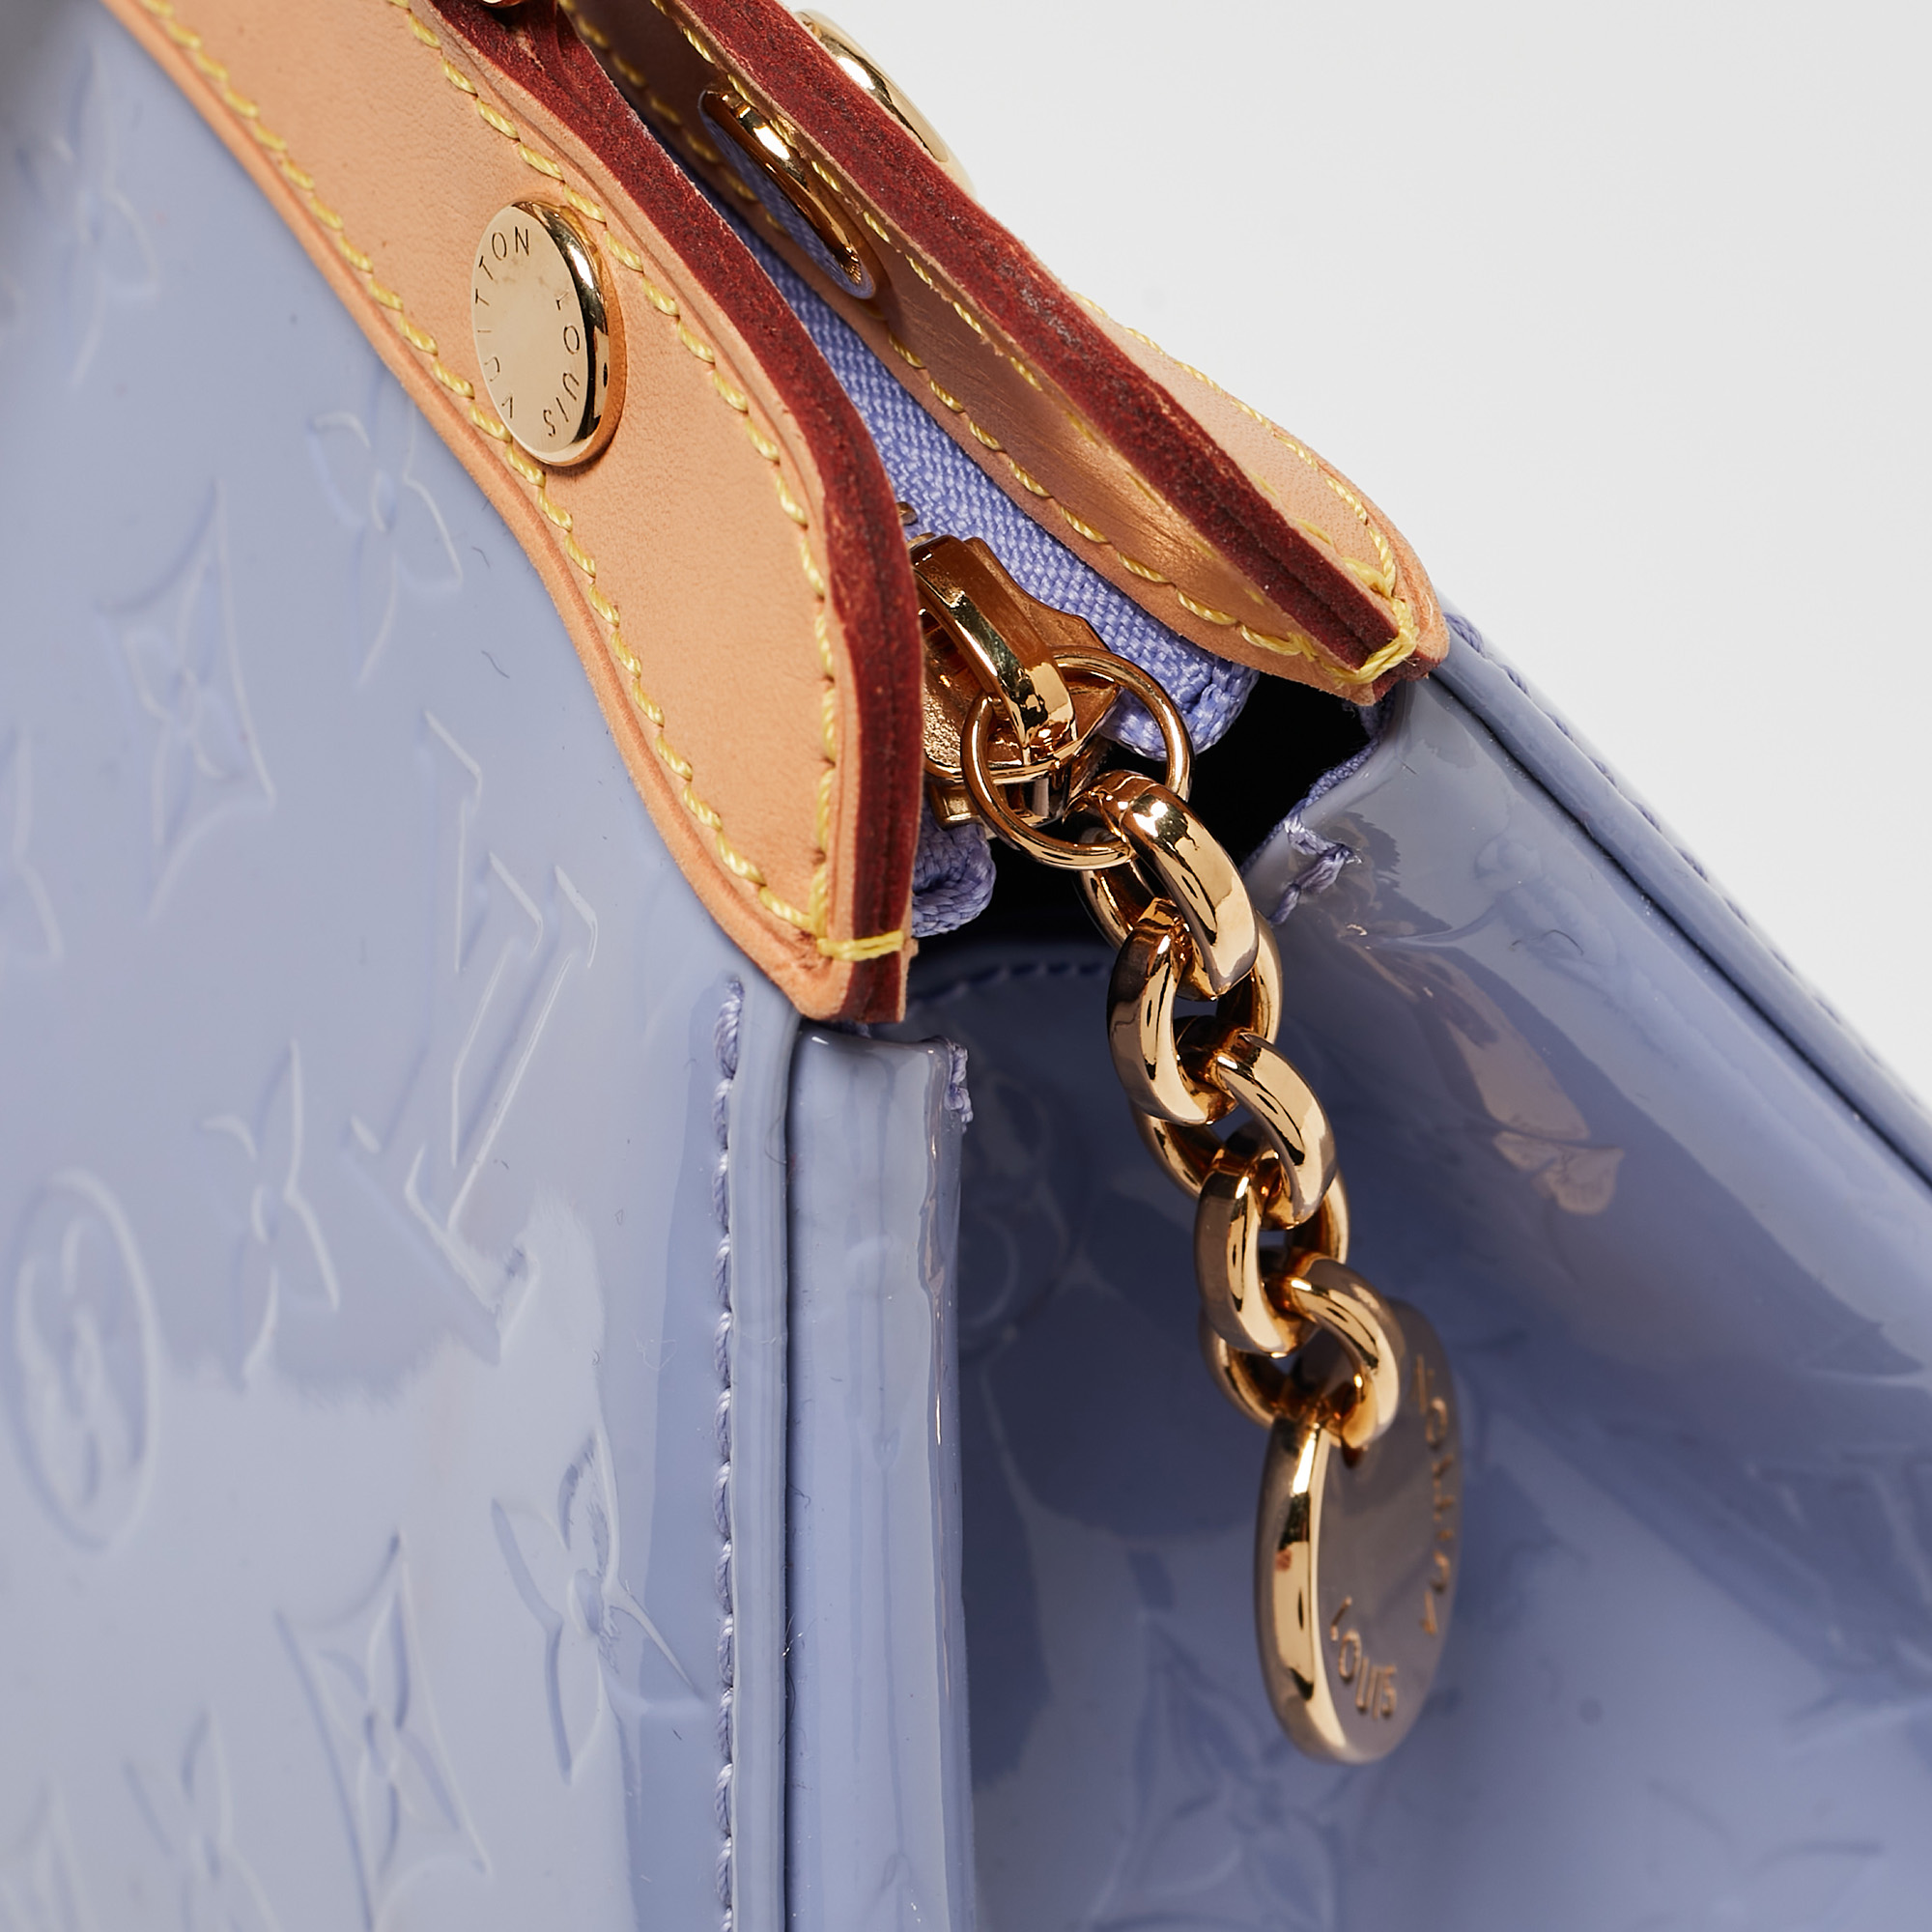 Louis Vuitton Lilac Monogram Vernis Brea MM Bag